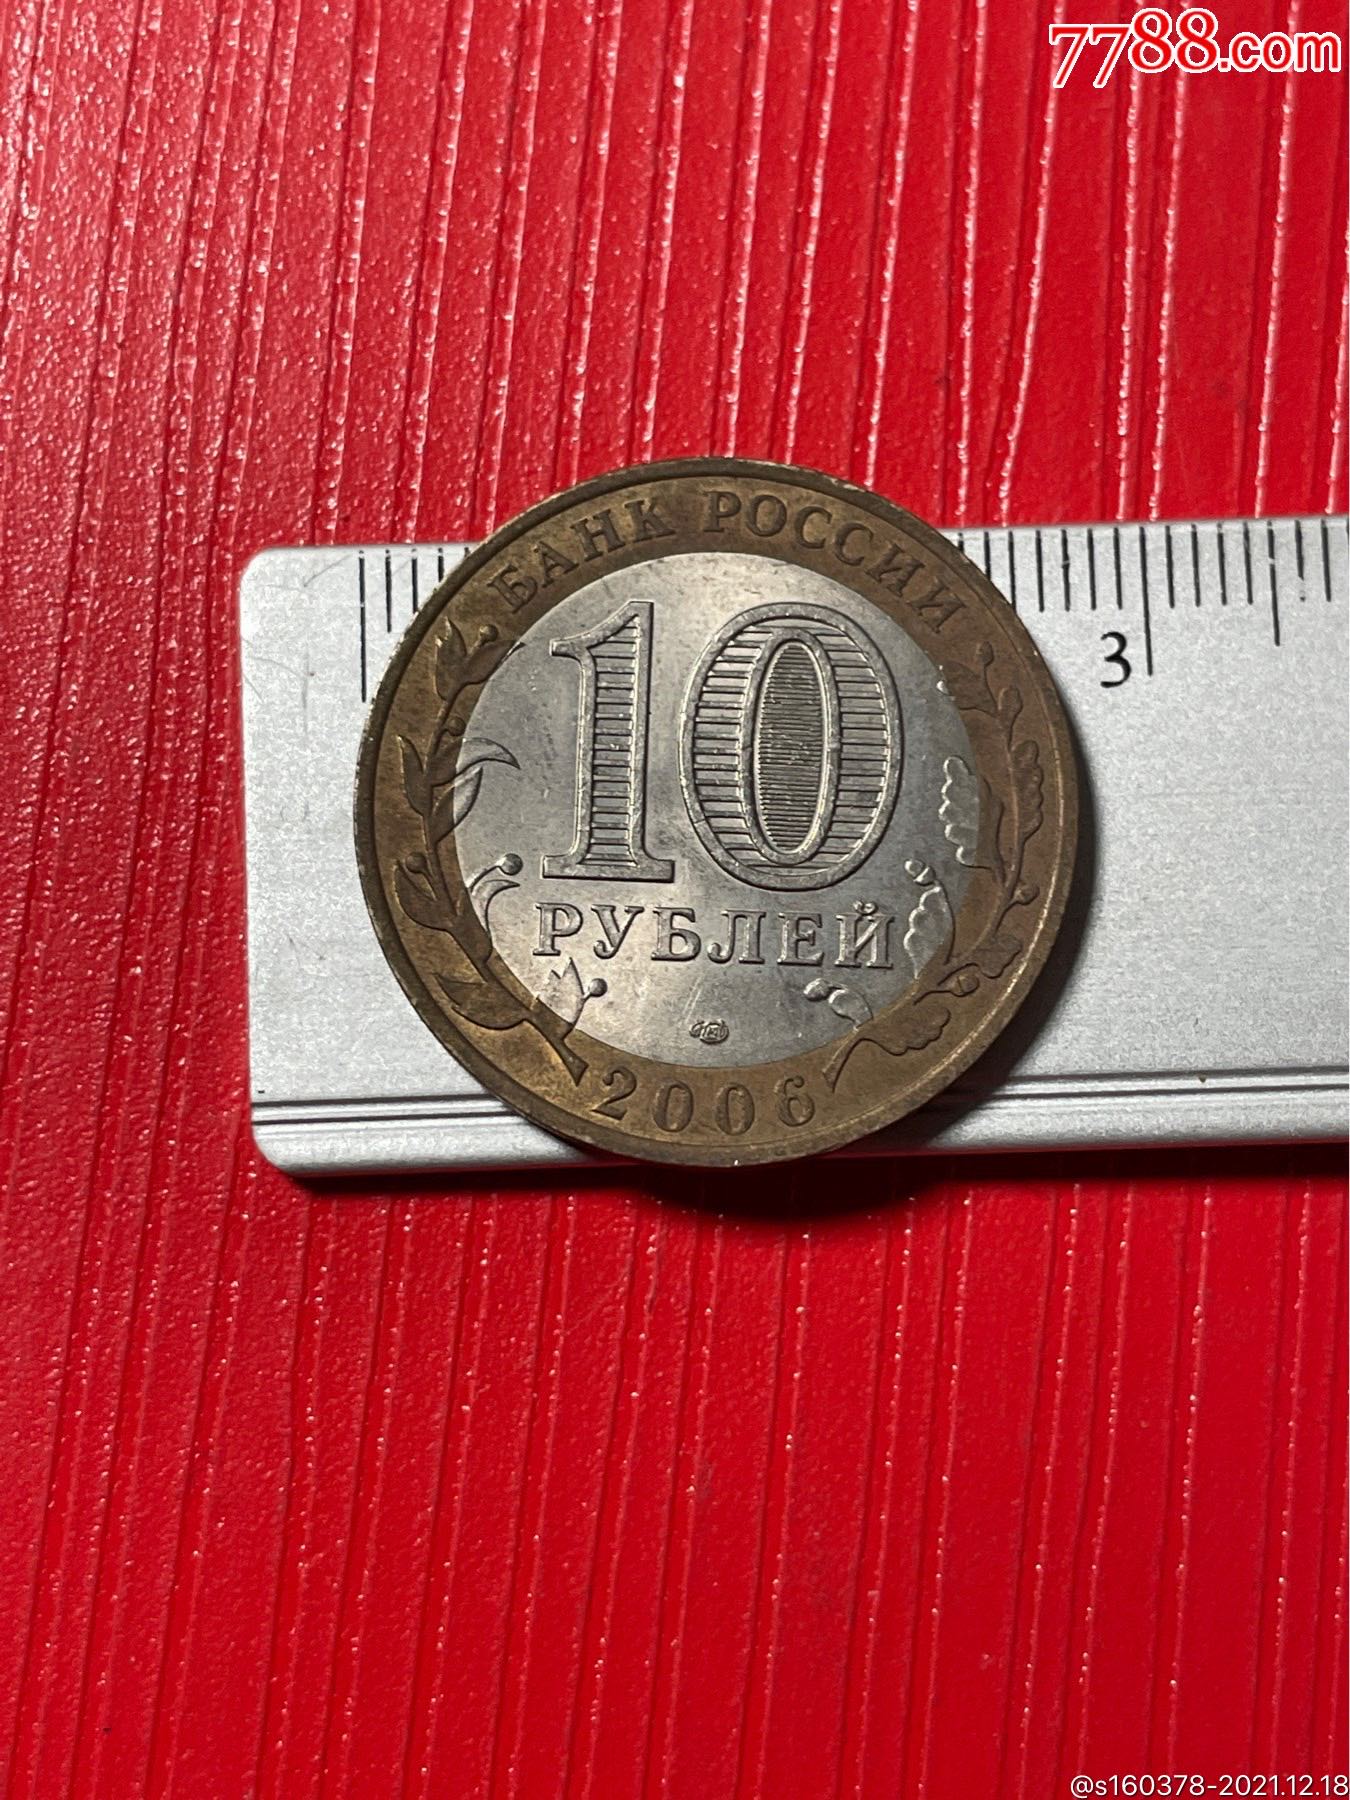 俄罗斯2006年10卢布双色镶嵌纪念硬币